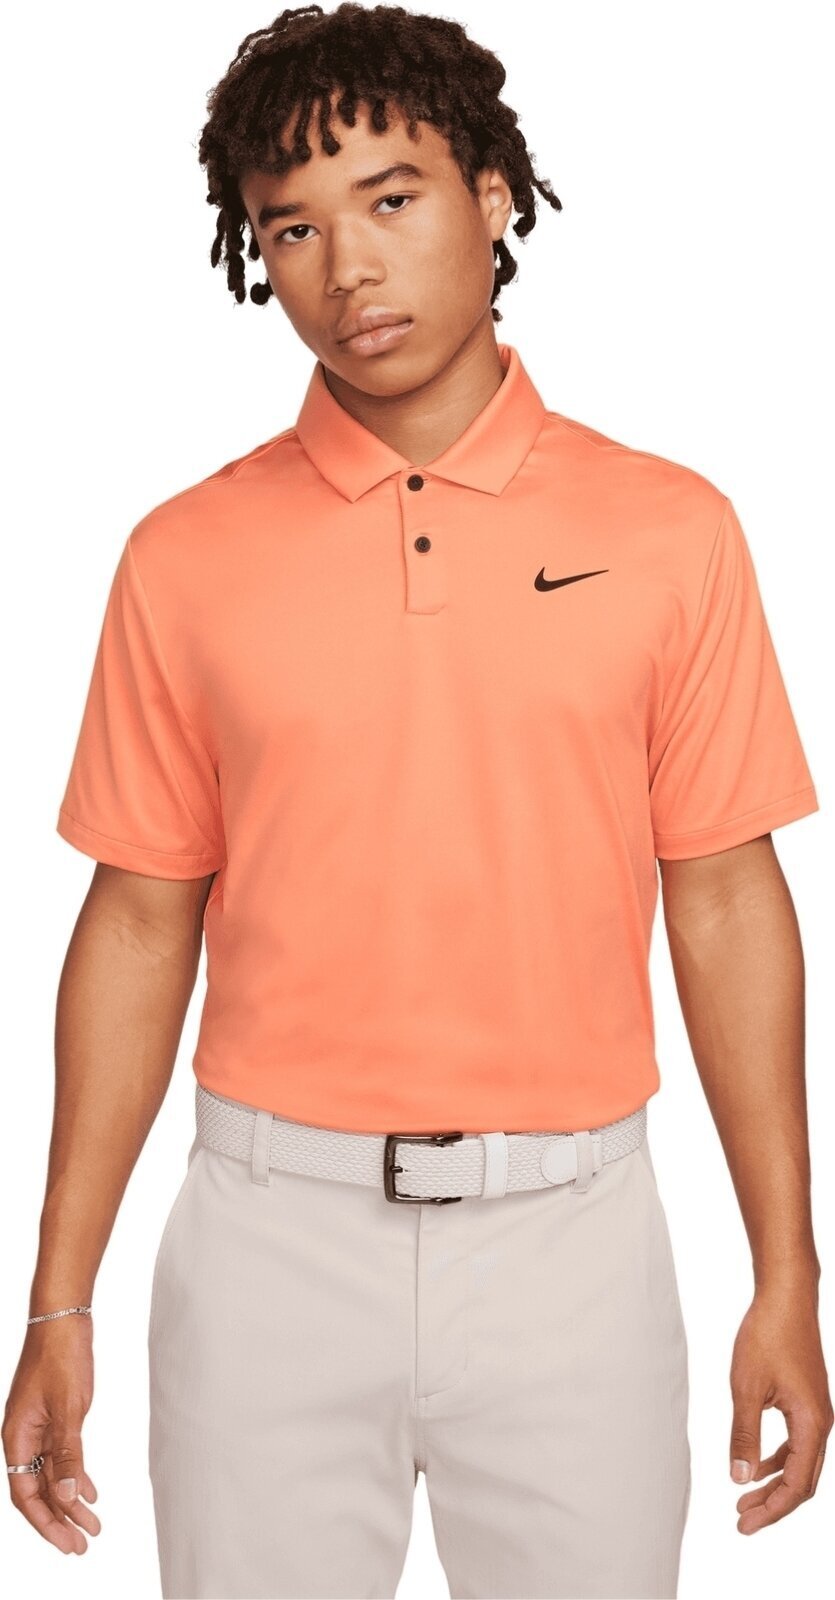 Camiseta polo Nike Dri-Fit Tour Solid Mens Polo Orange Trance/Black L Camiseta polo